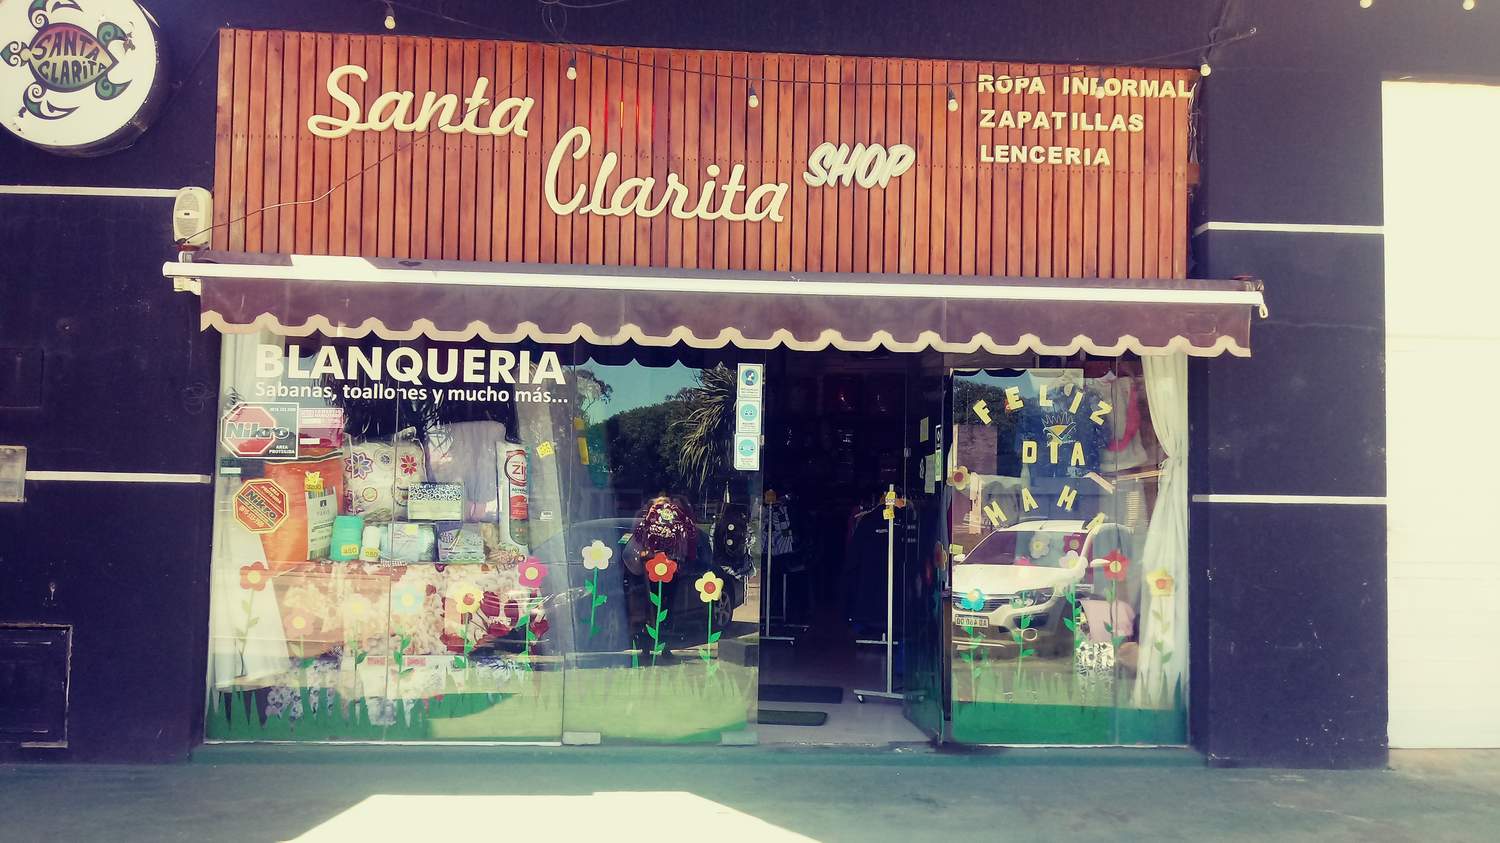 Santa Clarita